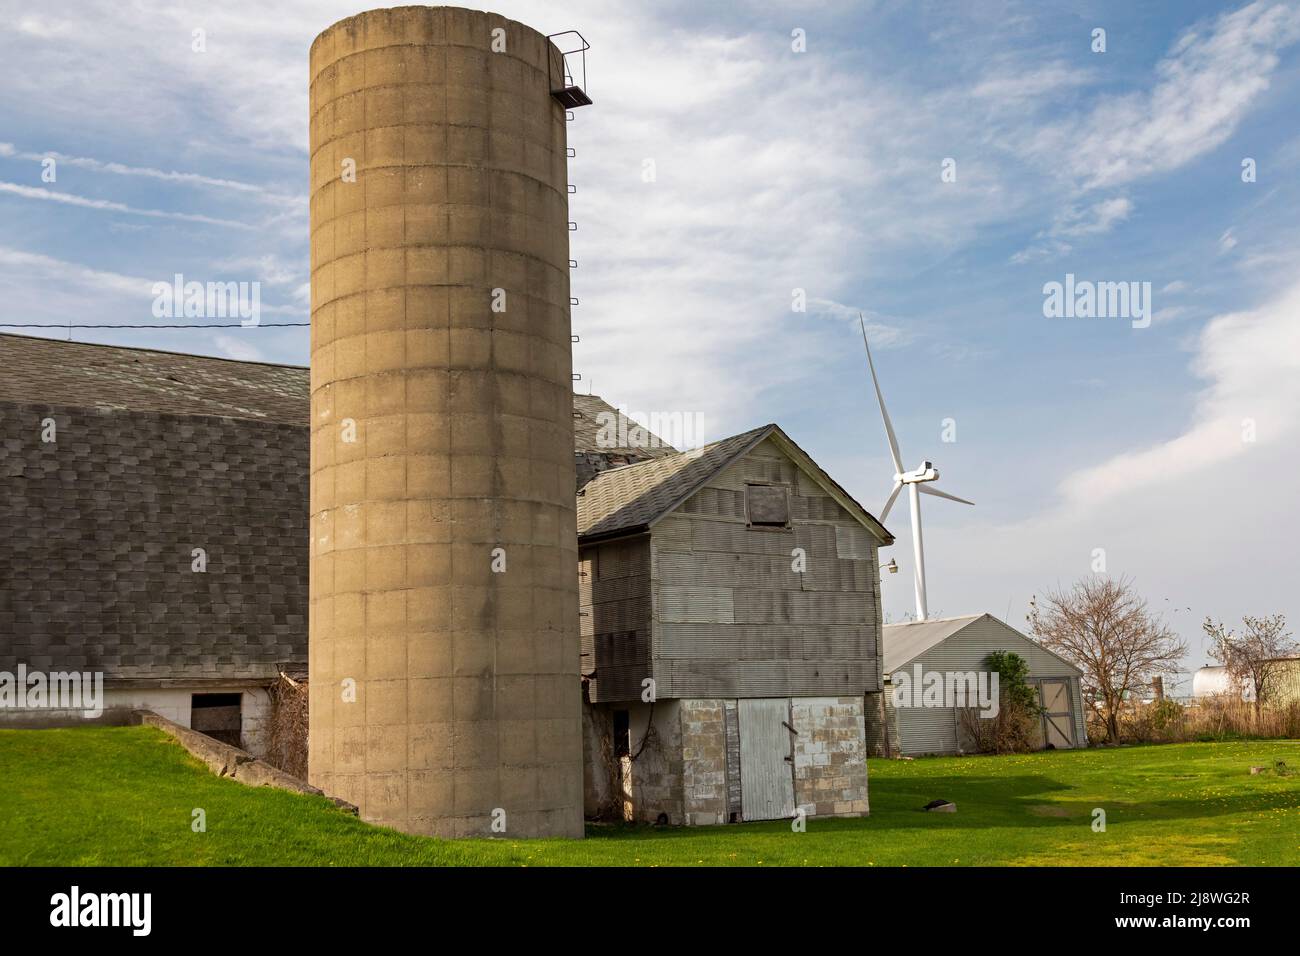 Pigeon, Michigan - Eine Windkraftanlage, Teil des Harvest II Wind Project, in der Nähe einer Scheune im Daumen von Michigan. Stockfoto